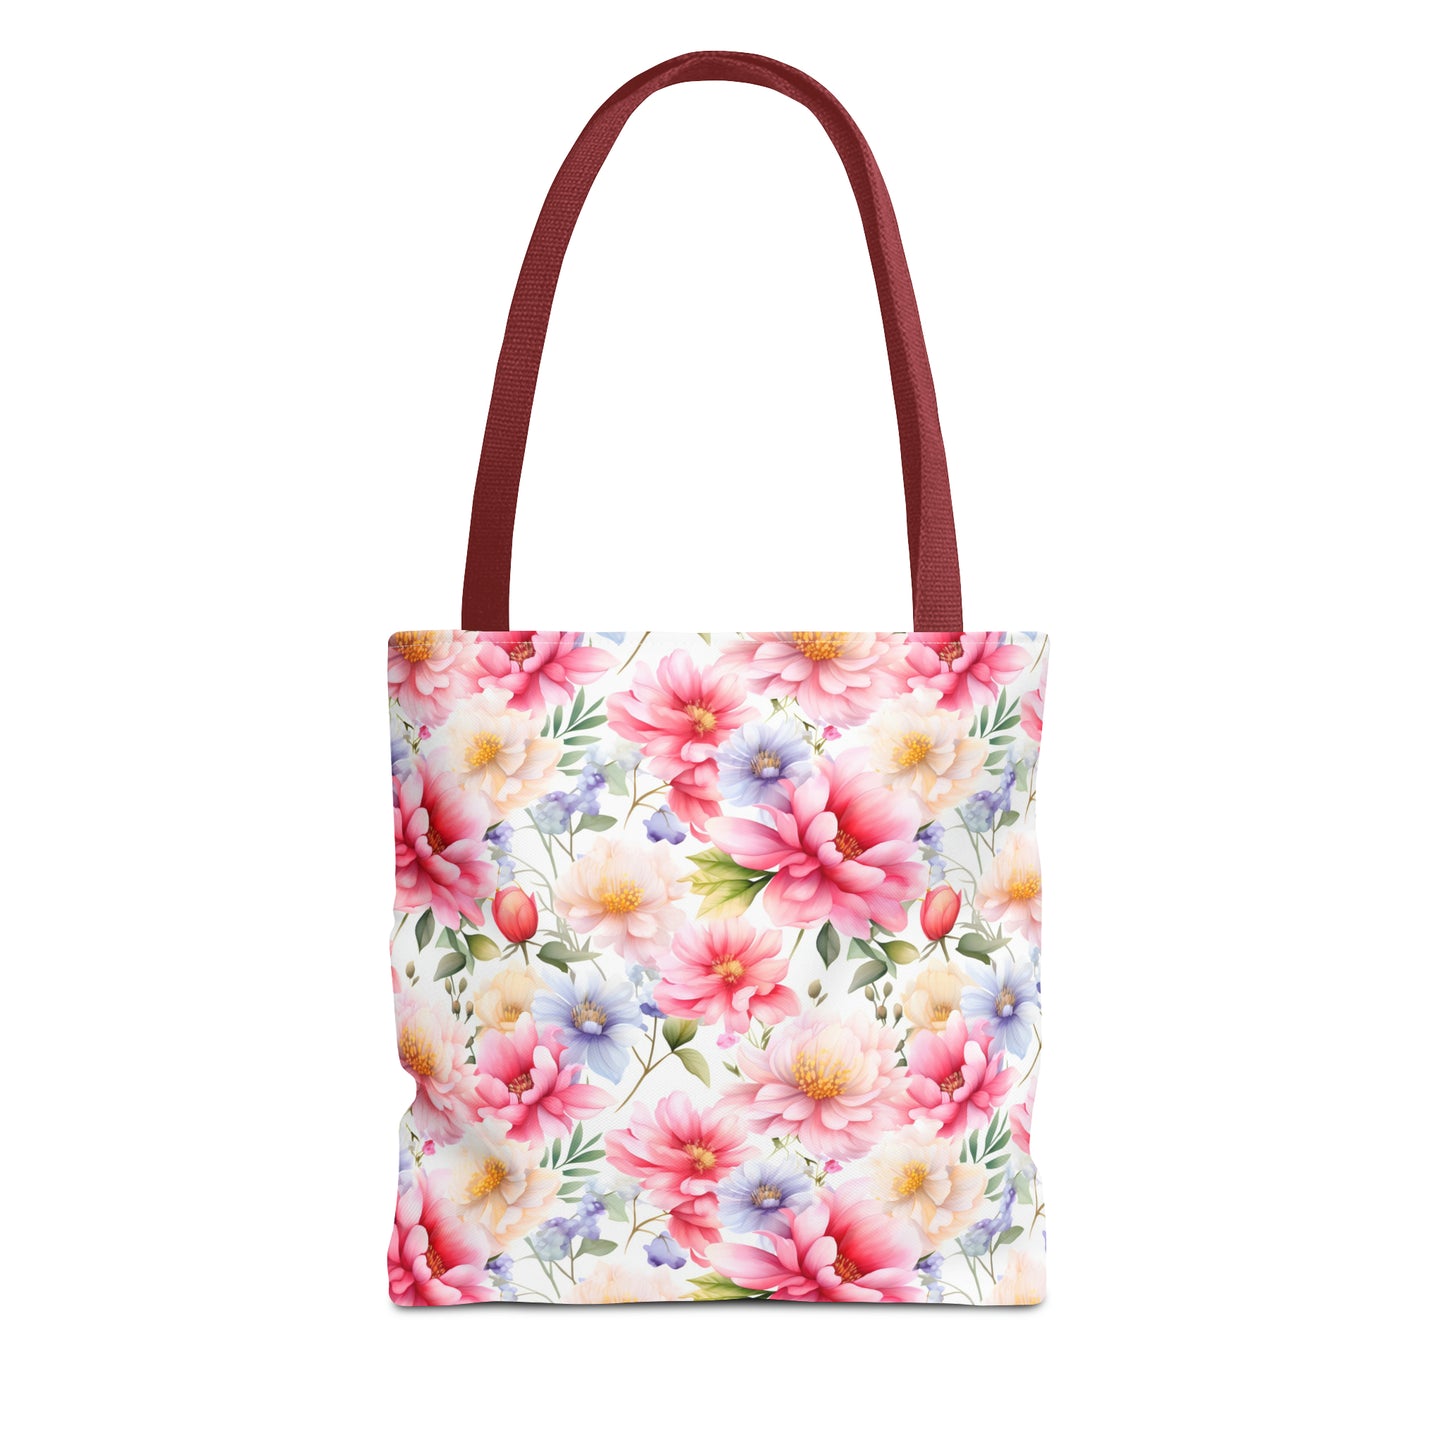 Pastel Blooms Spring Floral Tote Bag (13" x 13")